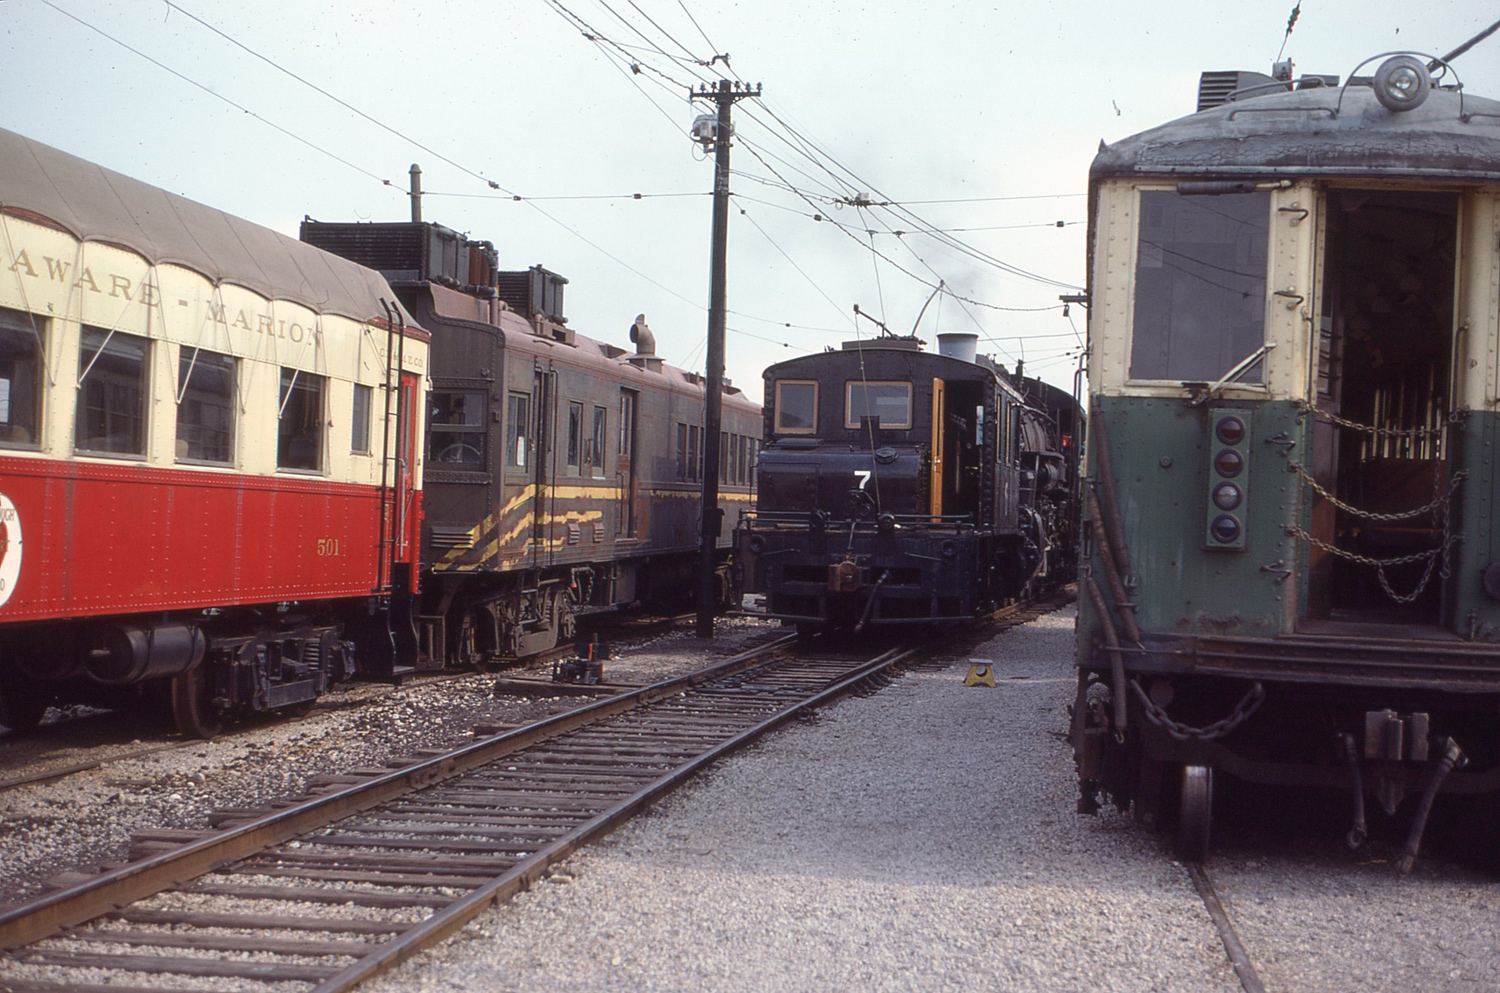 Worthington, Baldwin-Westinghouse locomotive č. 7